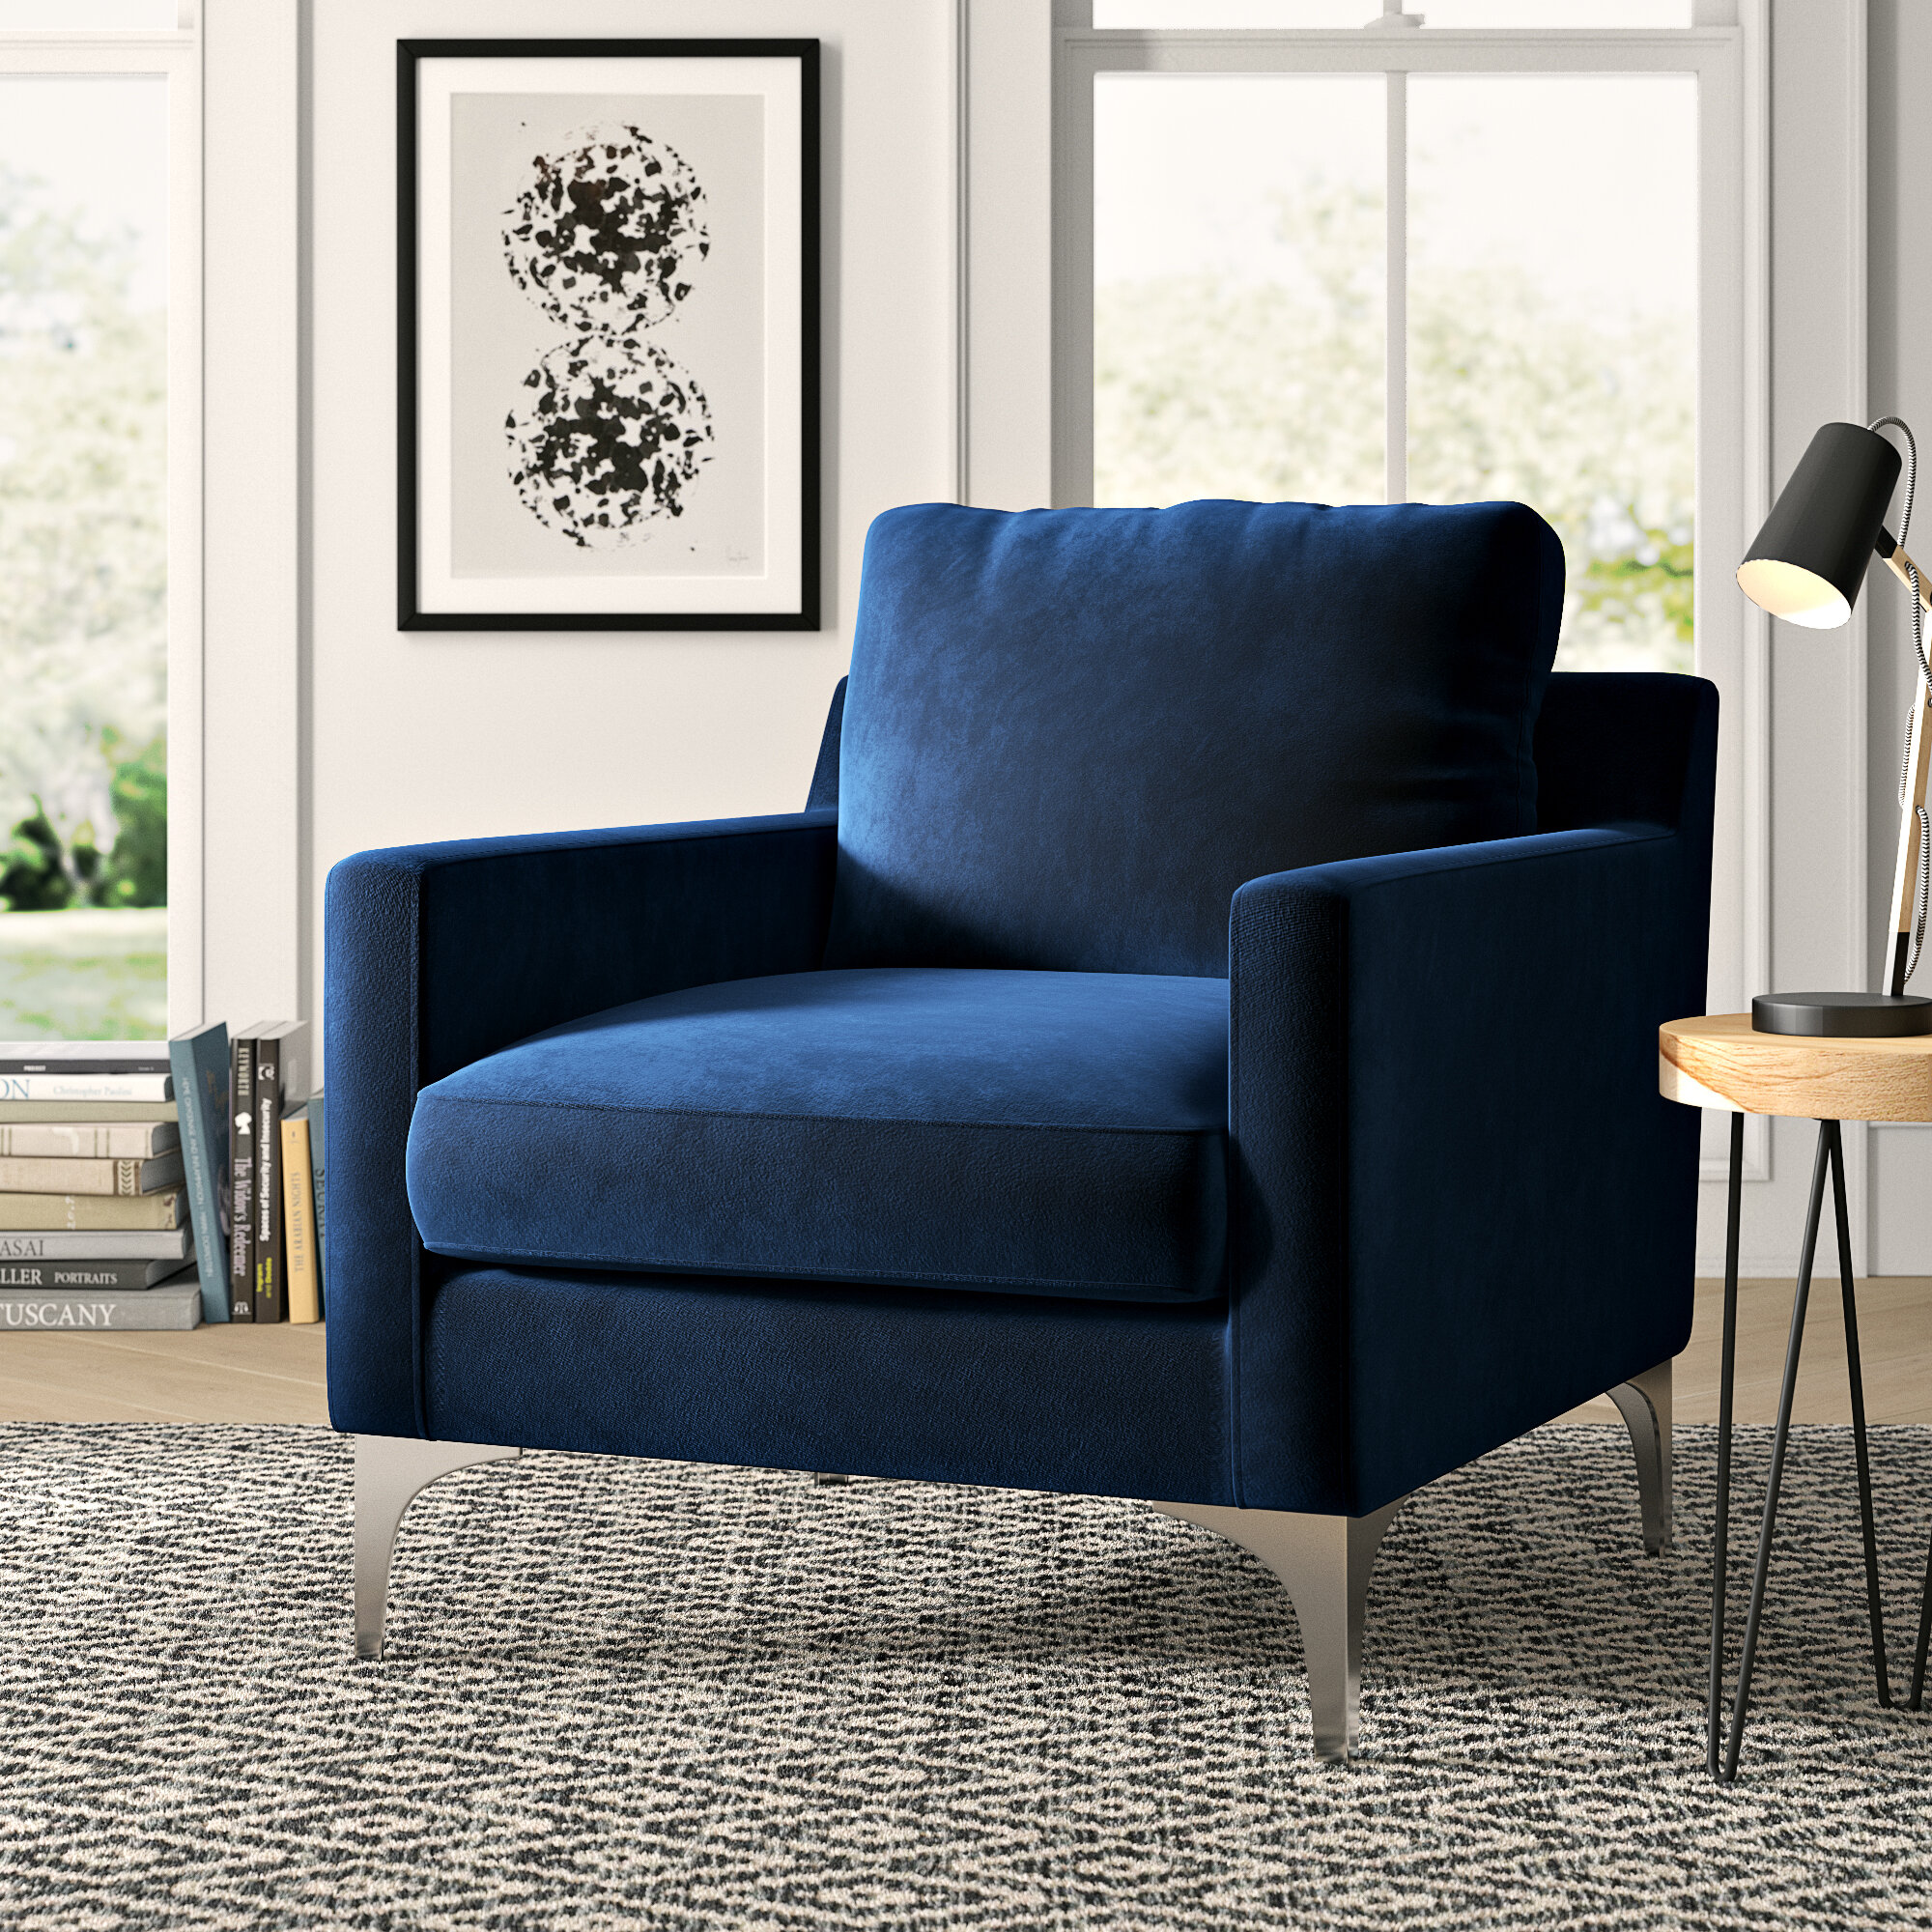 Modern Blue Minimalist Accent Chairs Allmodern